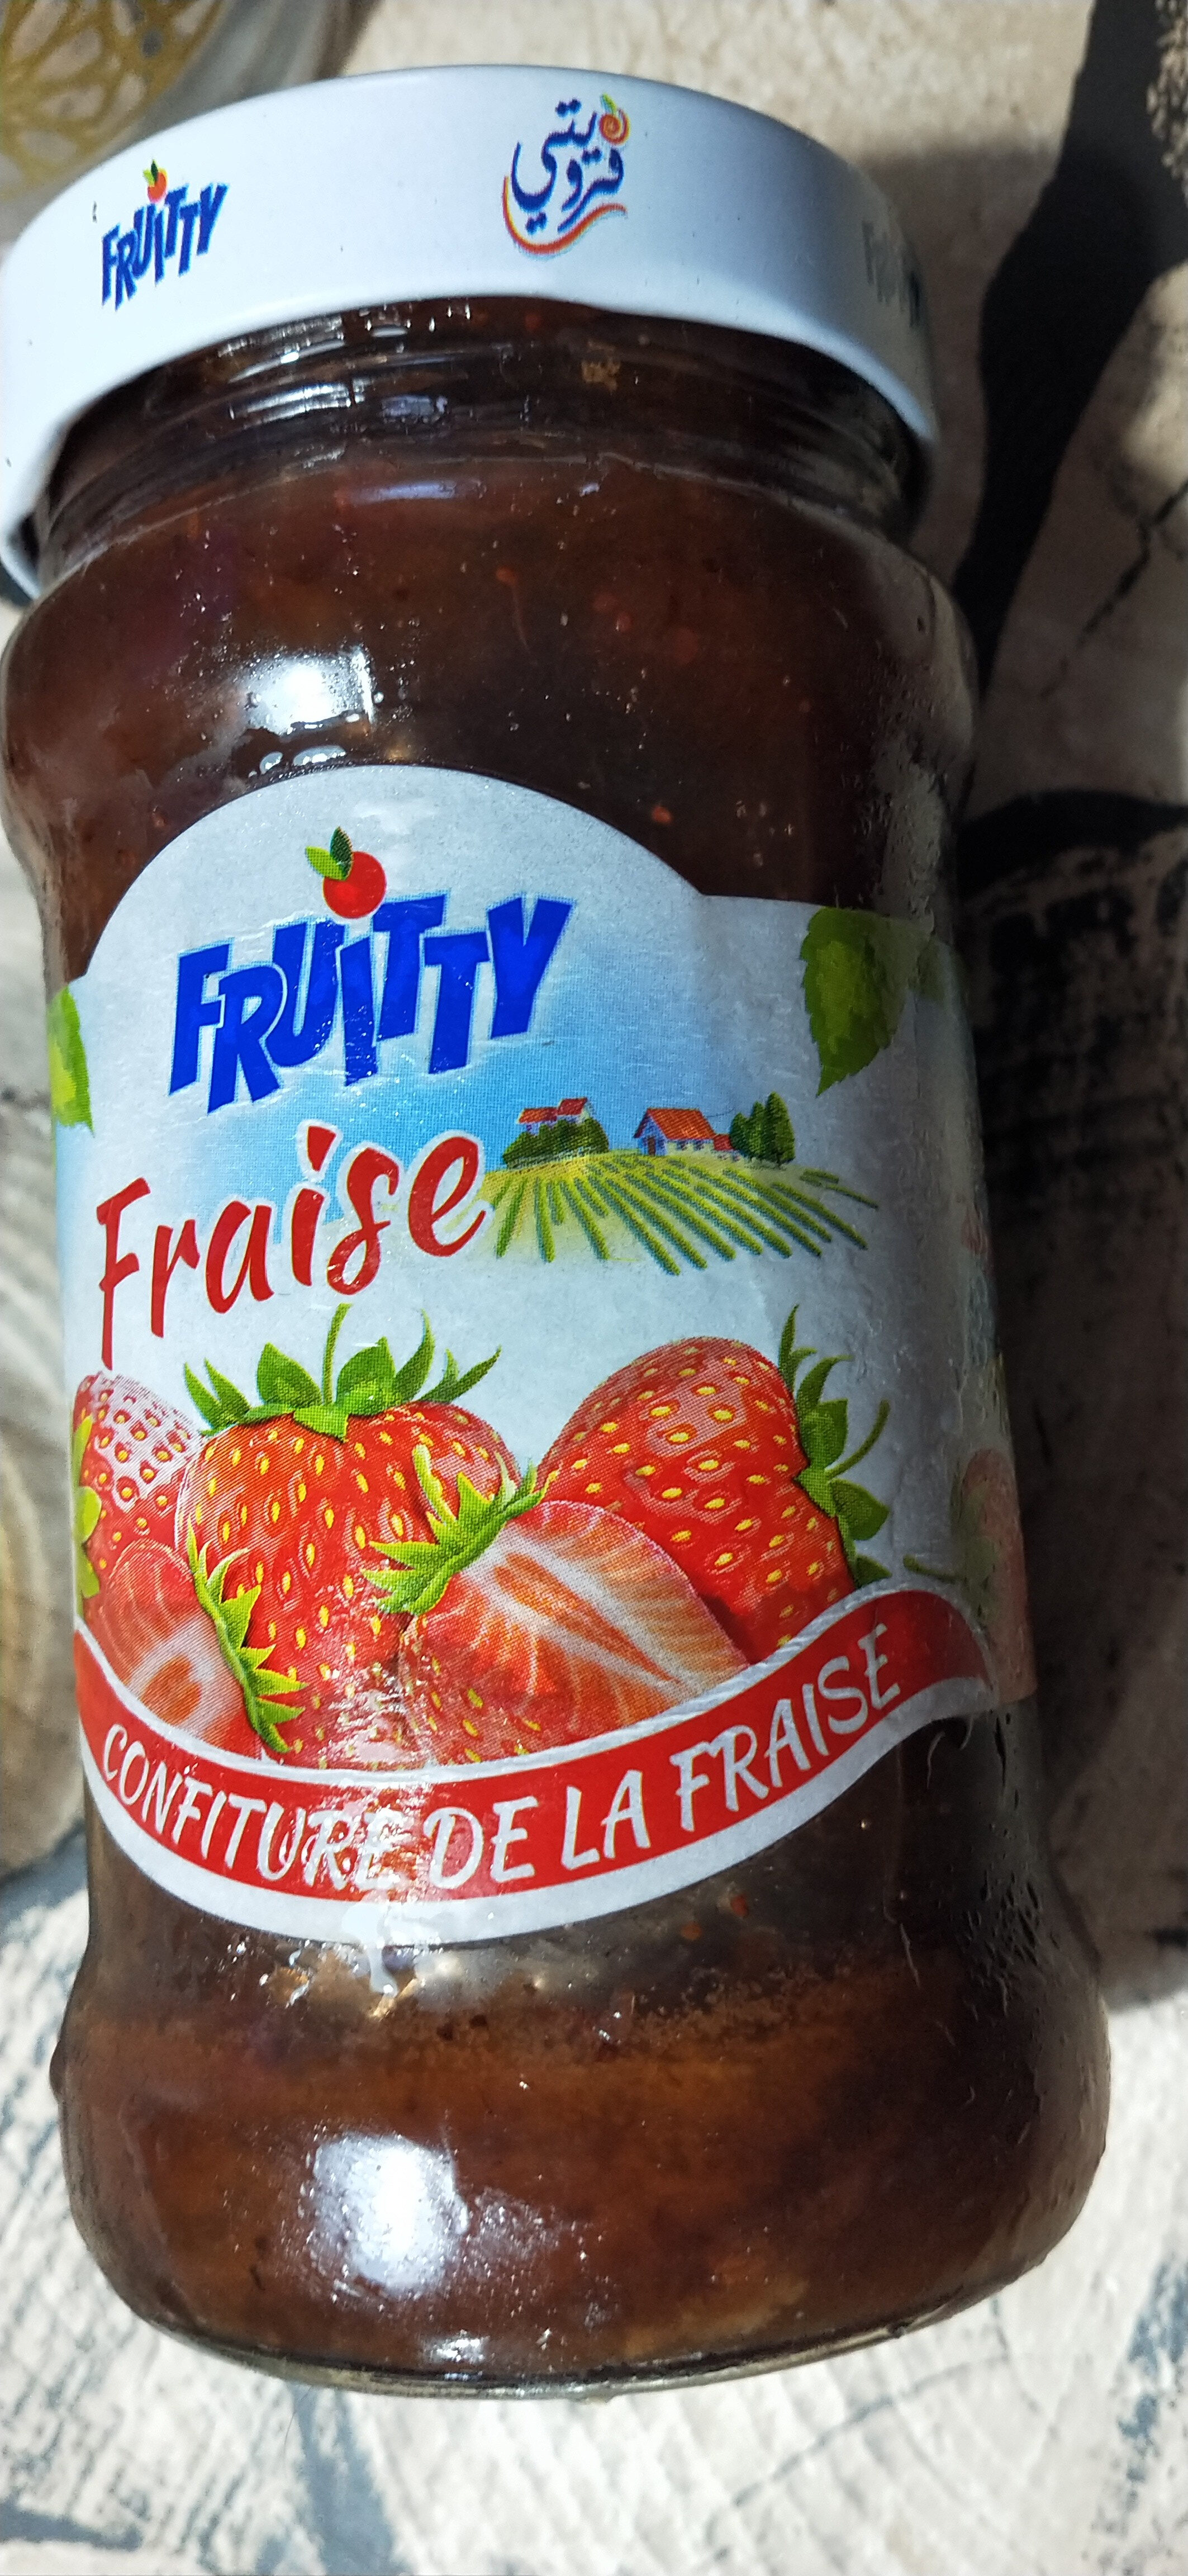 confiture de fraise - Product - fr